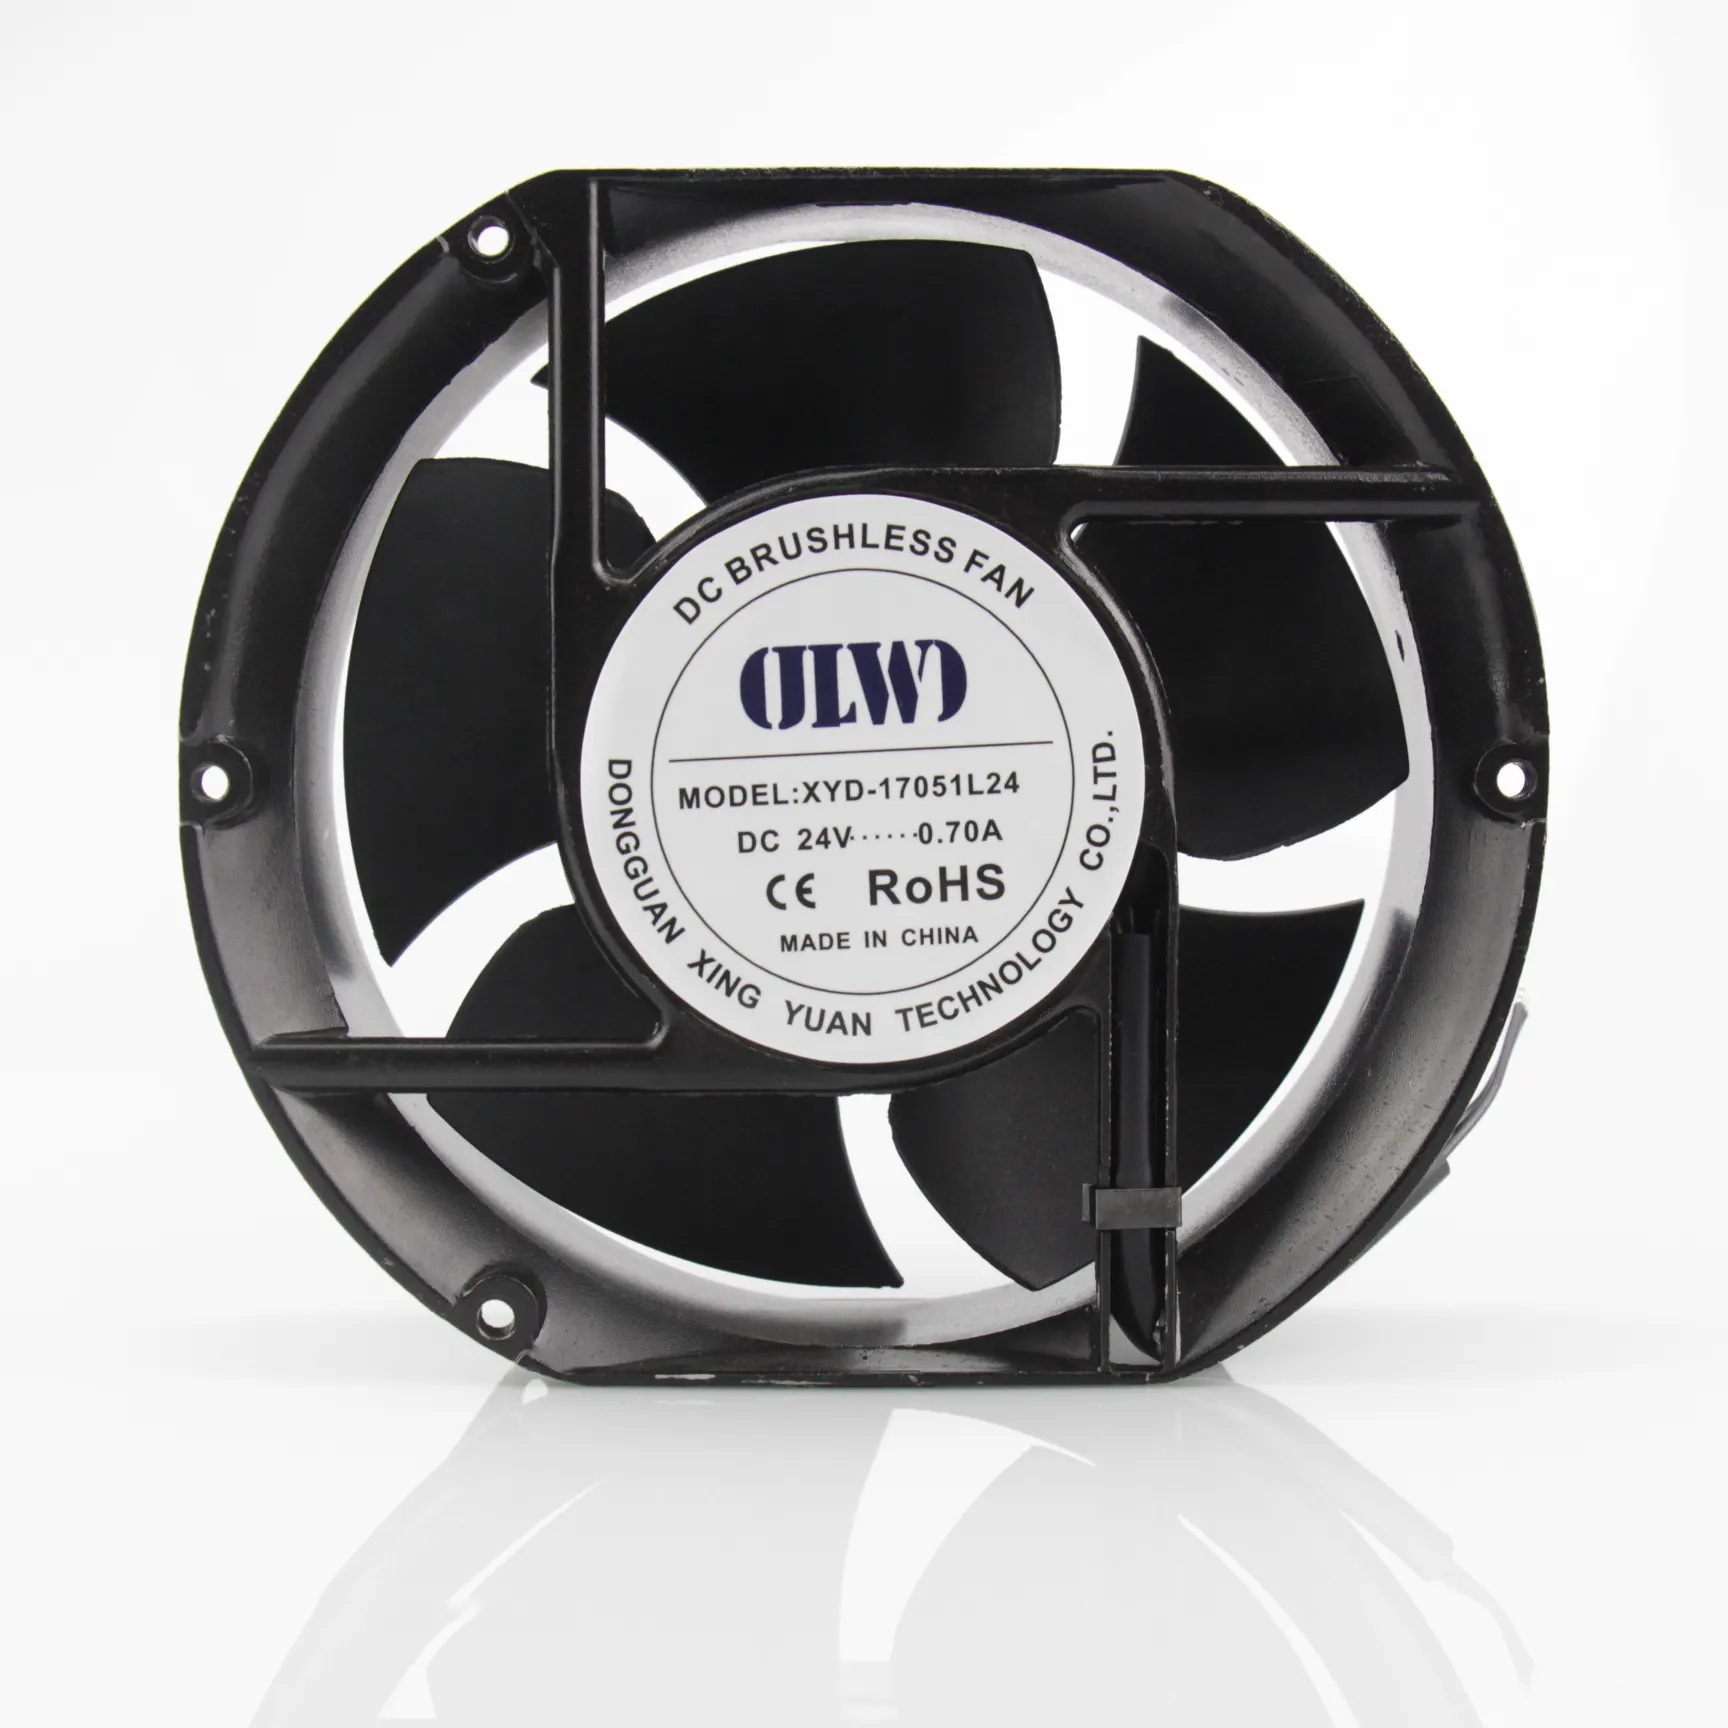 17051 AC Fan Aluminum axial Flow Fan 170X170X51mm Cooling fan Hot sales products